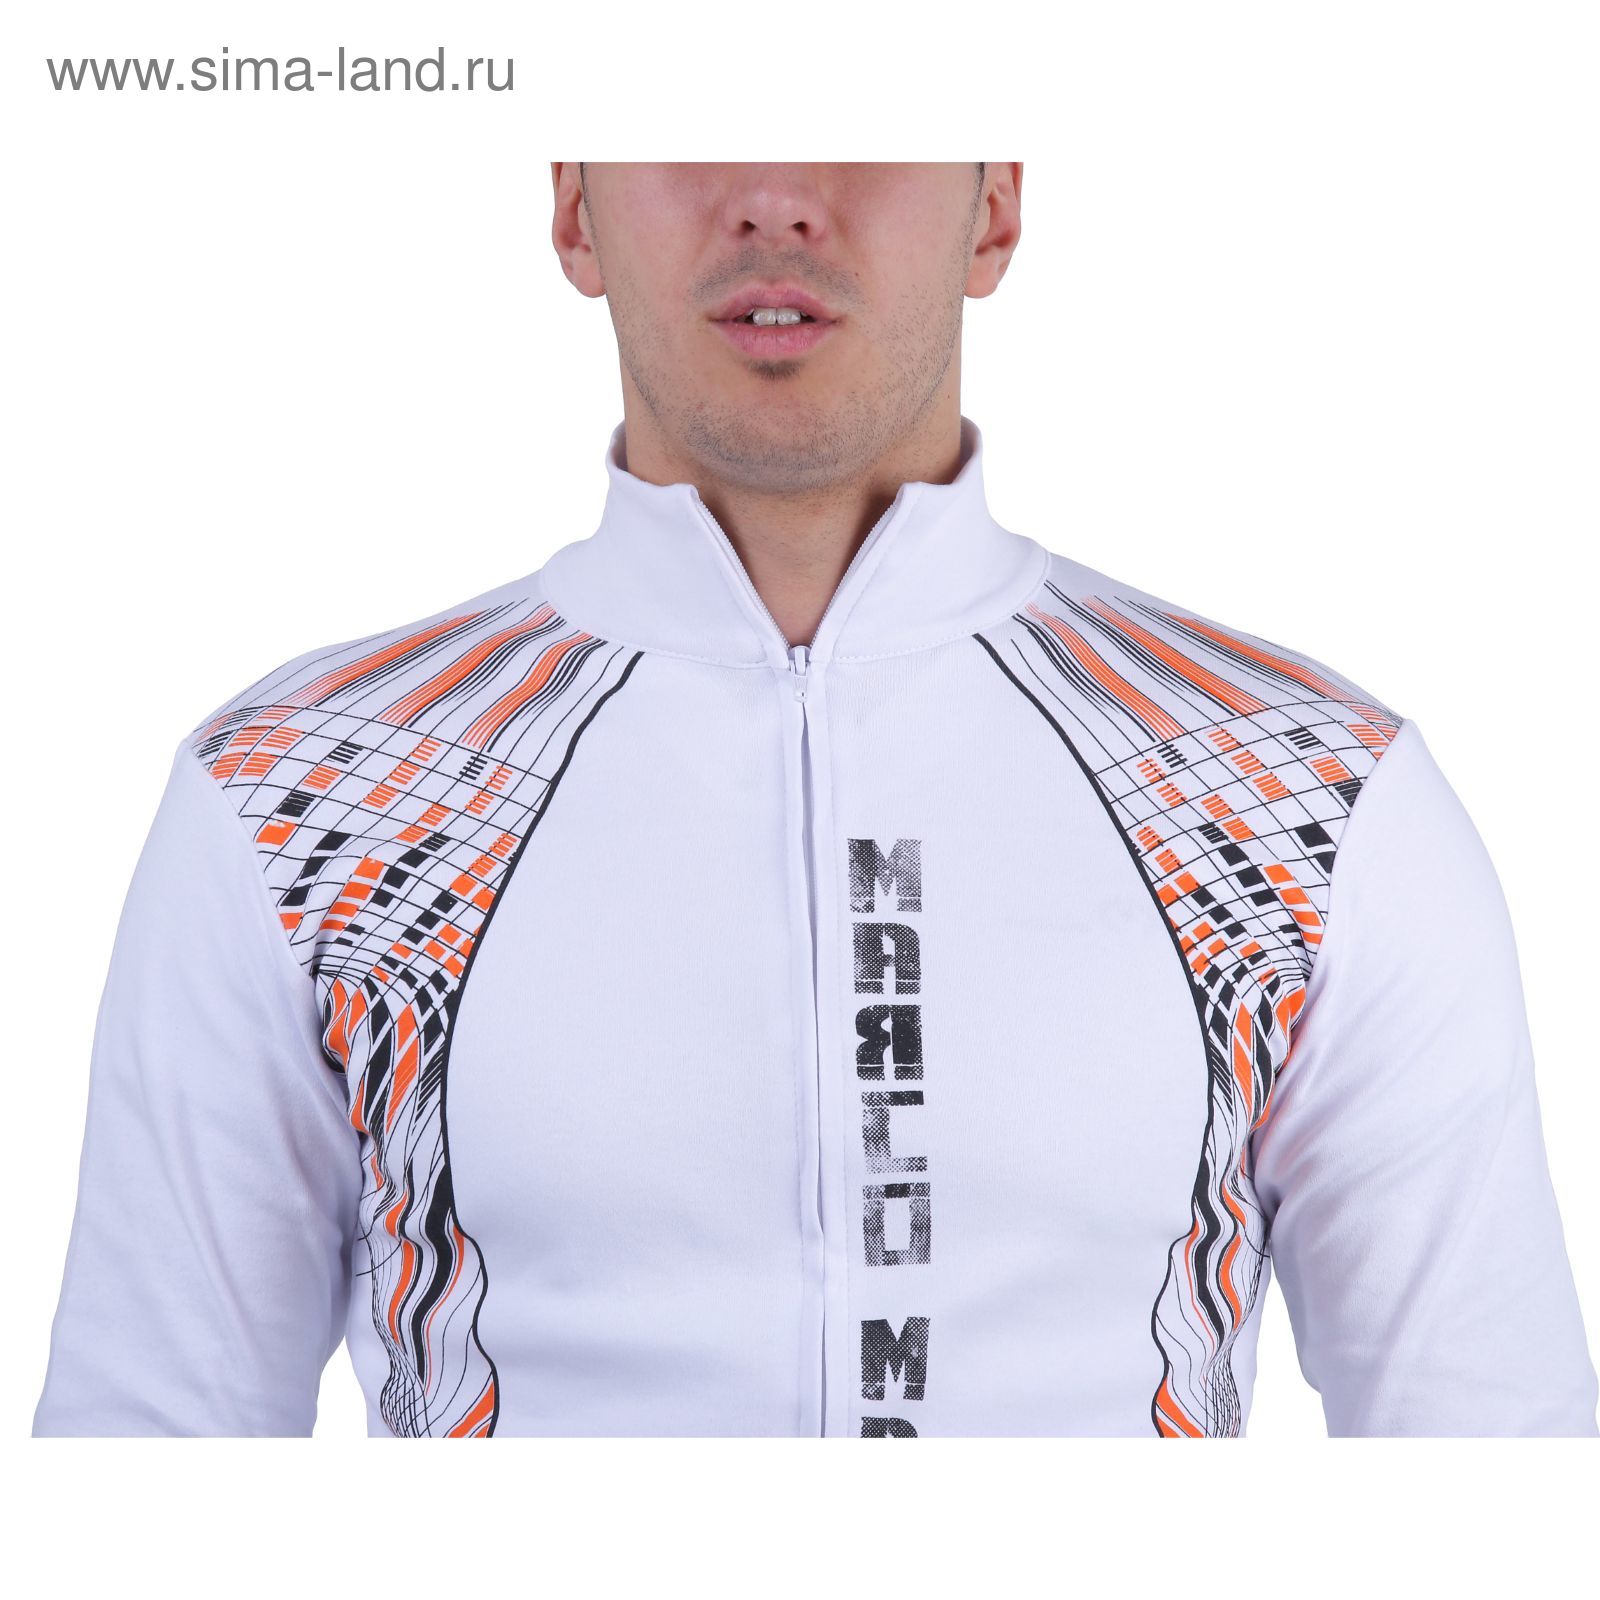 Куртка спортивная мужская, цвет белый, размер L, интерлок (арт. 515)